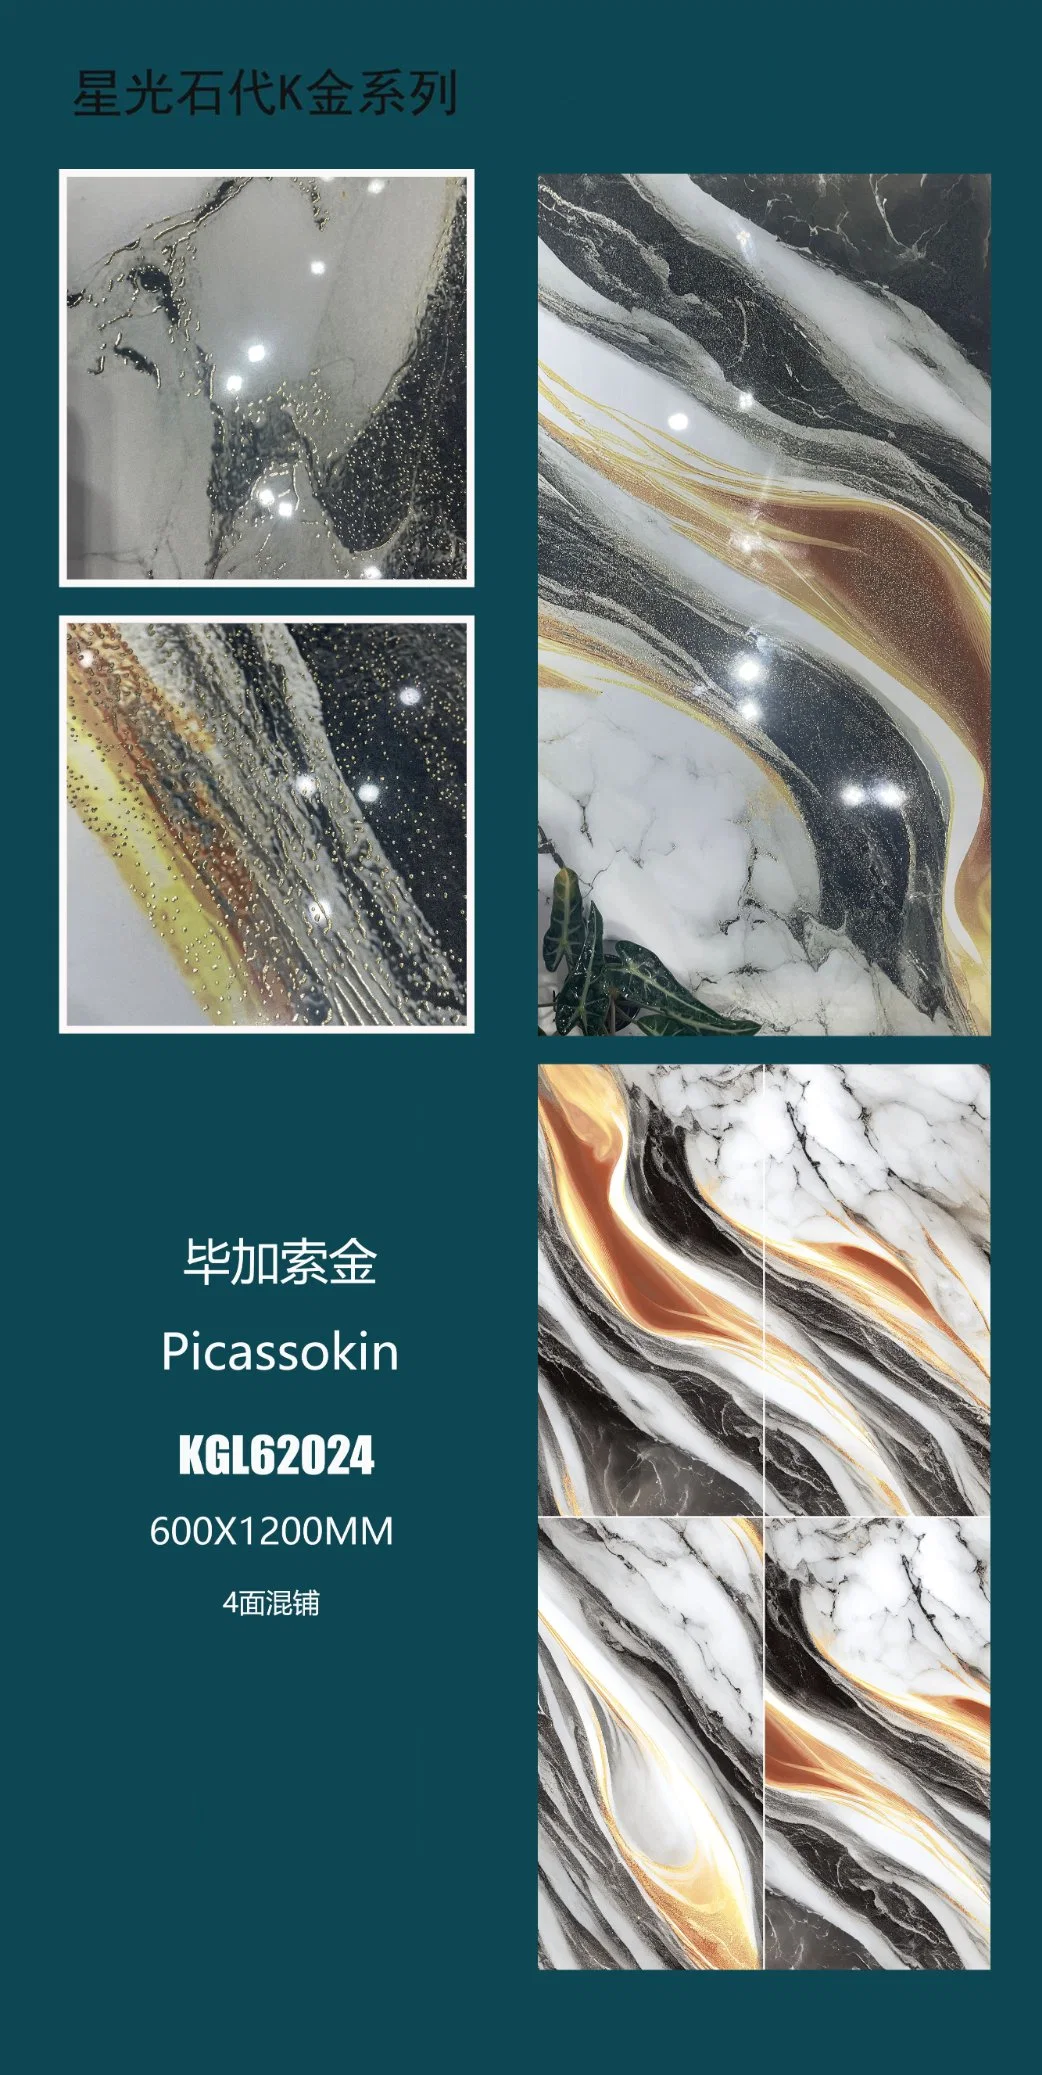 Foshan Modern 600 X 1200mm Full Body K Line Vitrified Golden Silver Polished Glazed Porcelain Ceramic Wall Floor Tiles